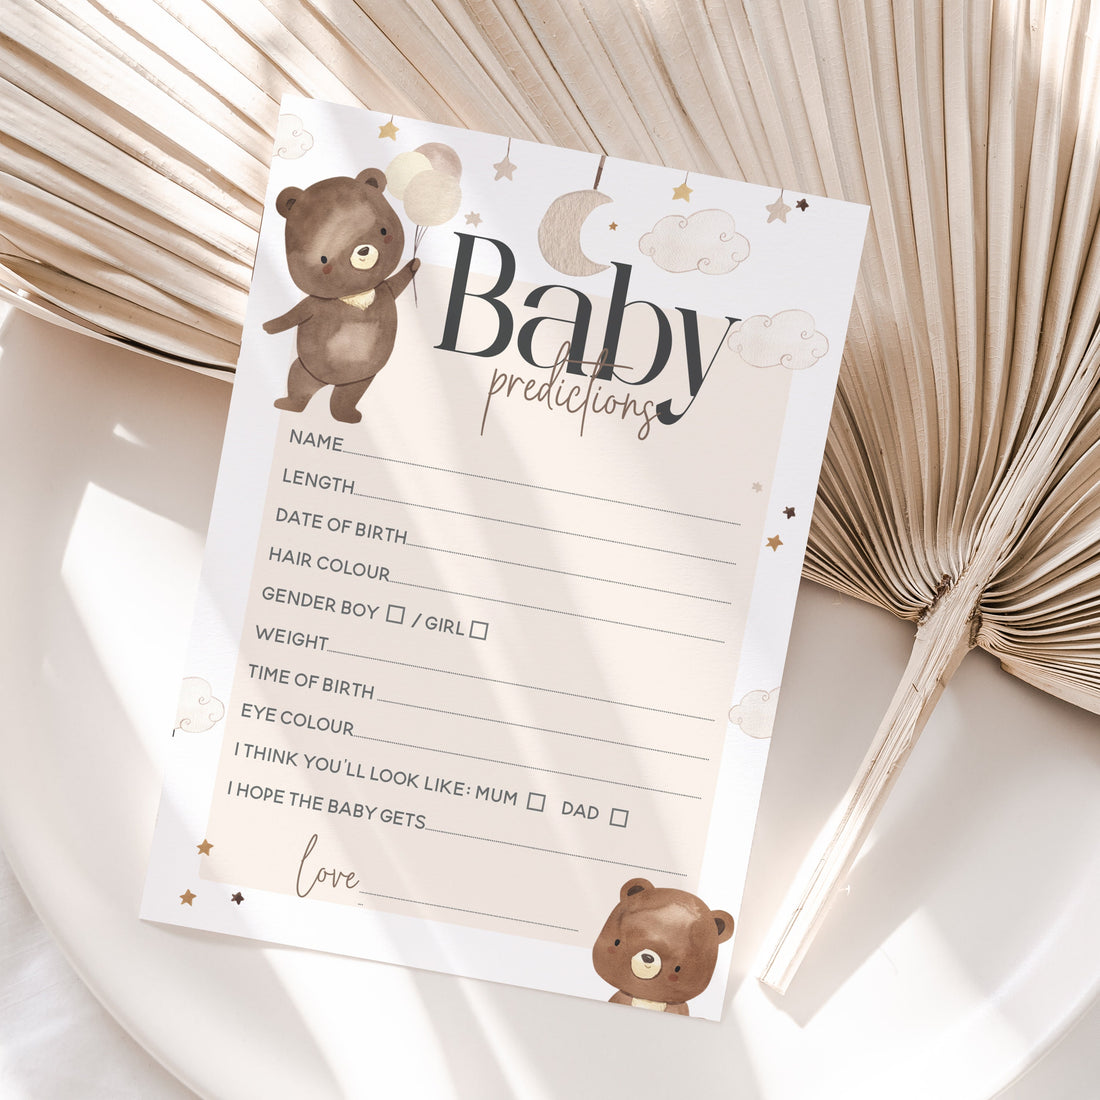 Teddy Bear Theme Baby Prediction Cards